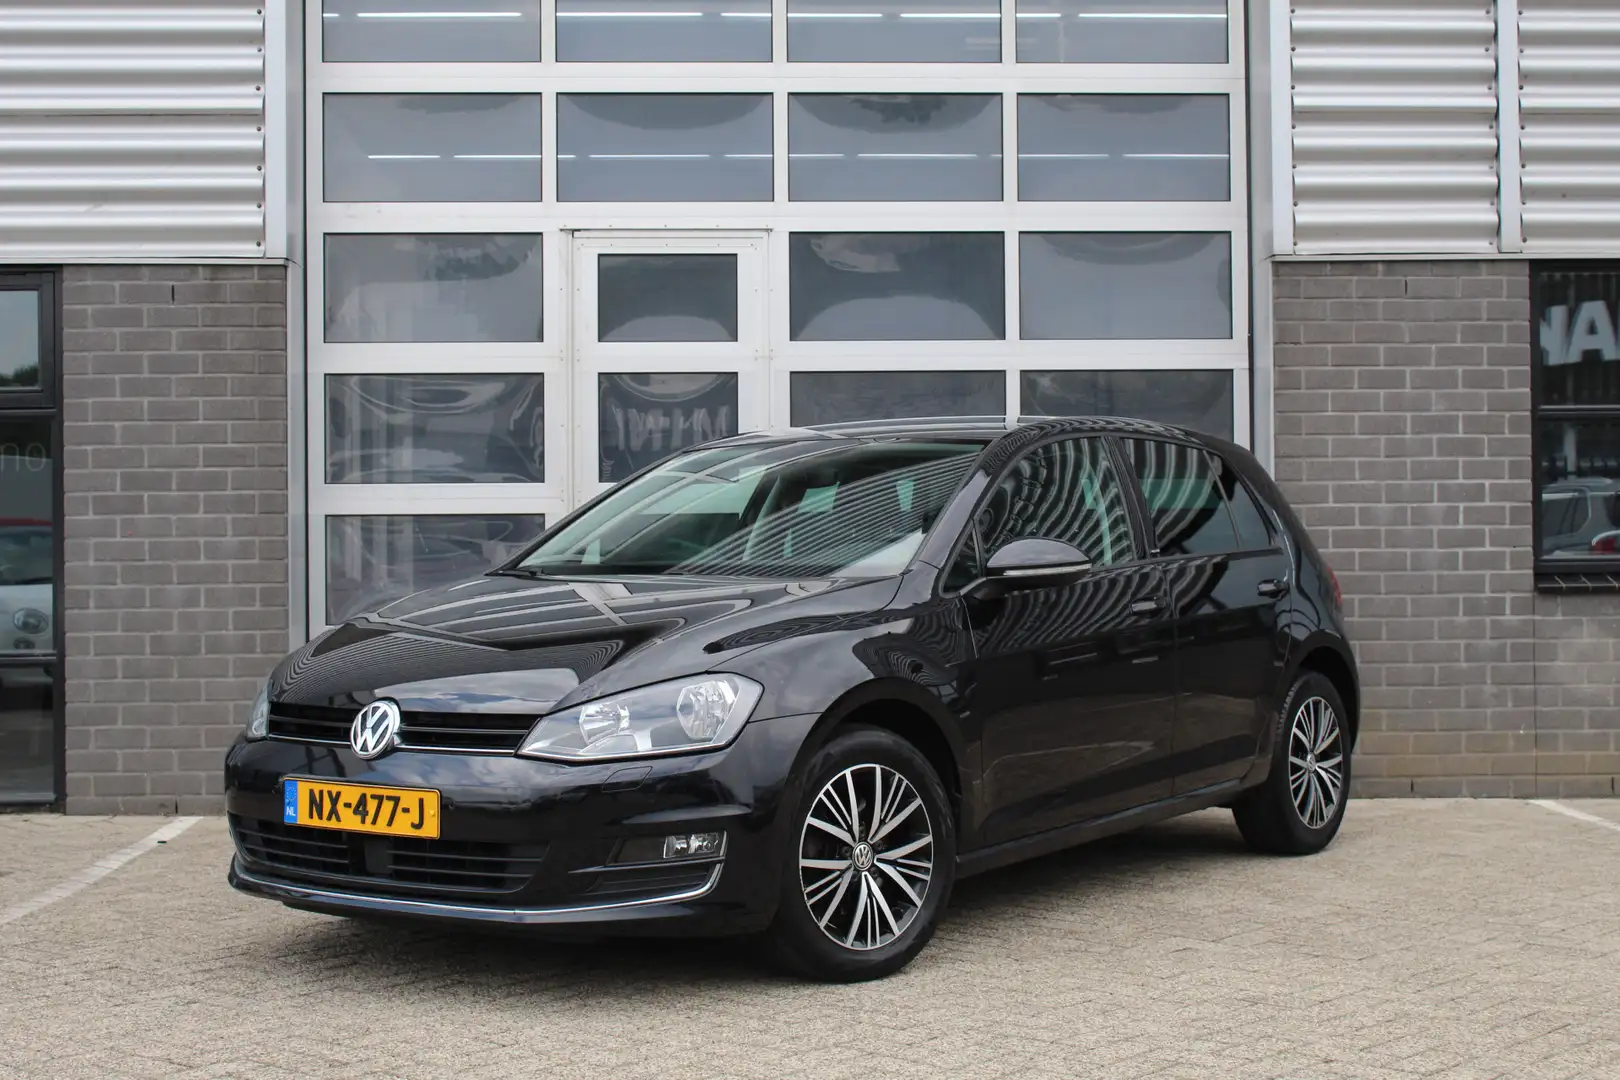 module Nuttig Halloween Volkswagen Golf Hatchback in Zwart gebruikt in ALKMAAR voor € 14.950,-